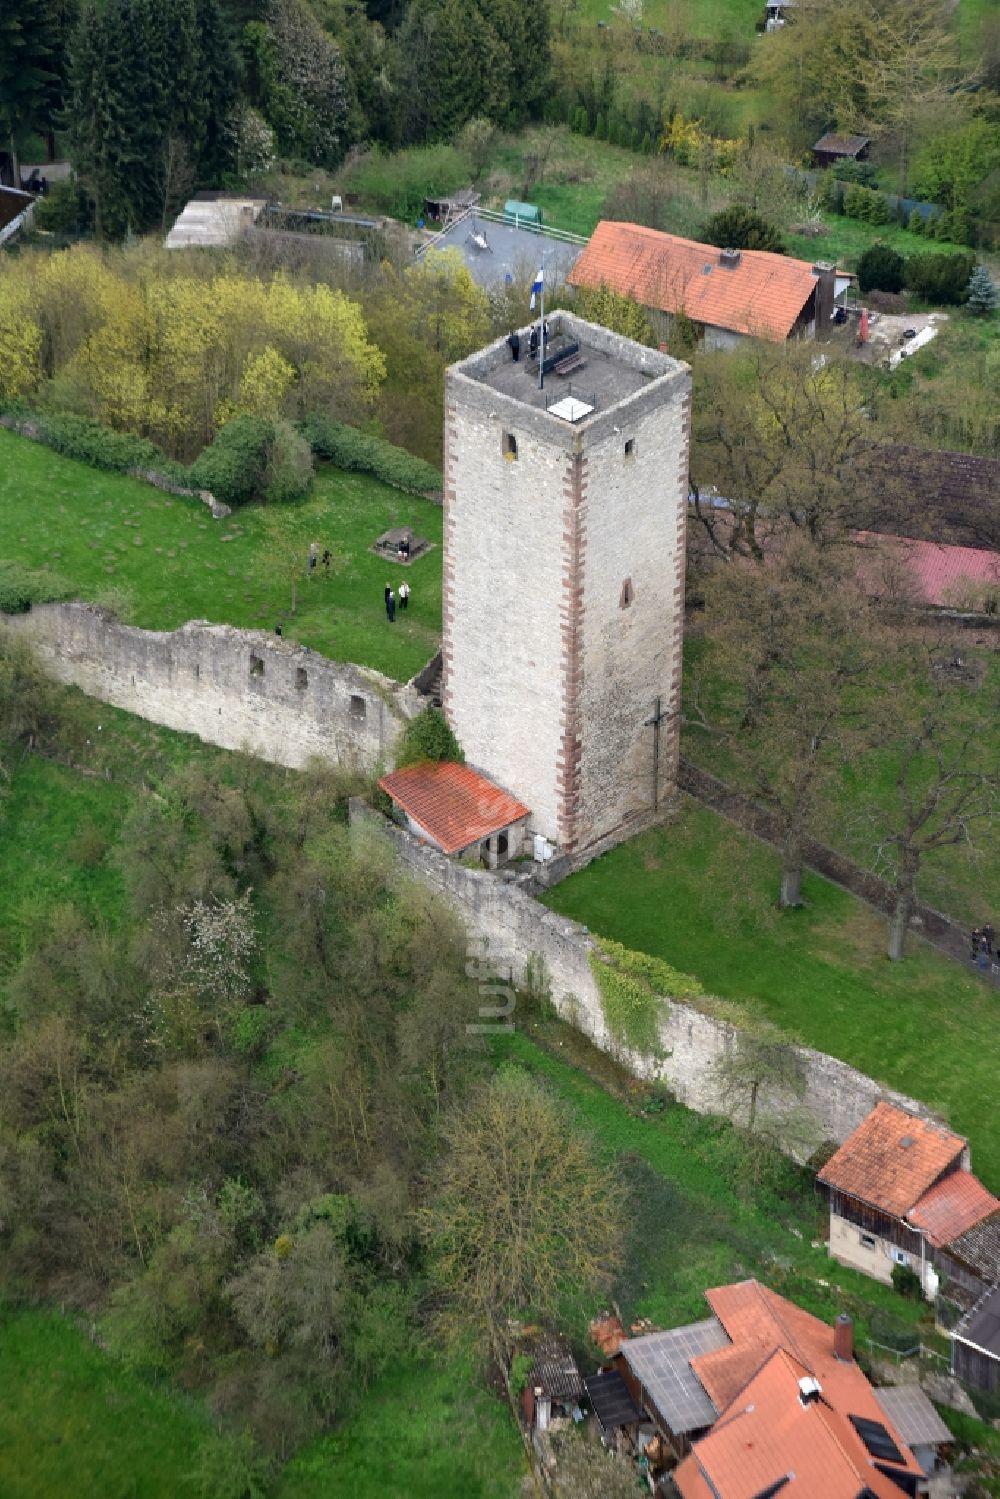 Greene von oben - Ruine und Mauerreste der ehemaligen Burganlage der Veste in Greene im Bundesland Niedersachsen